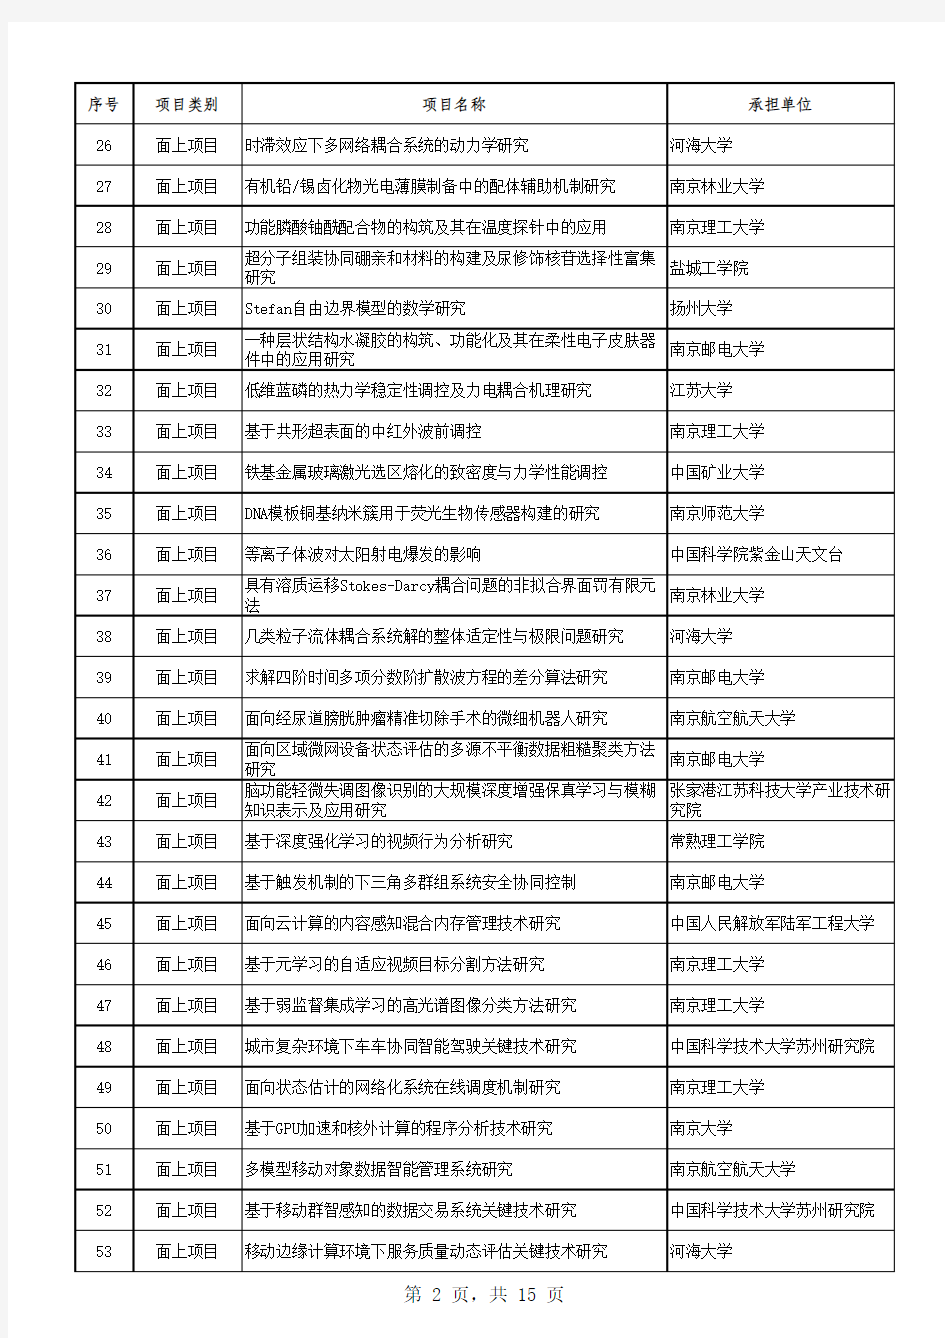 2019年江苏省自然科学基金面上项目